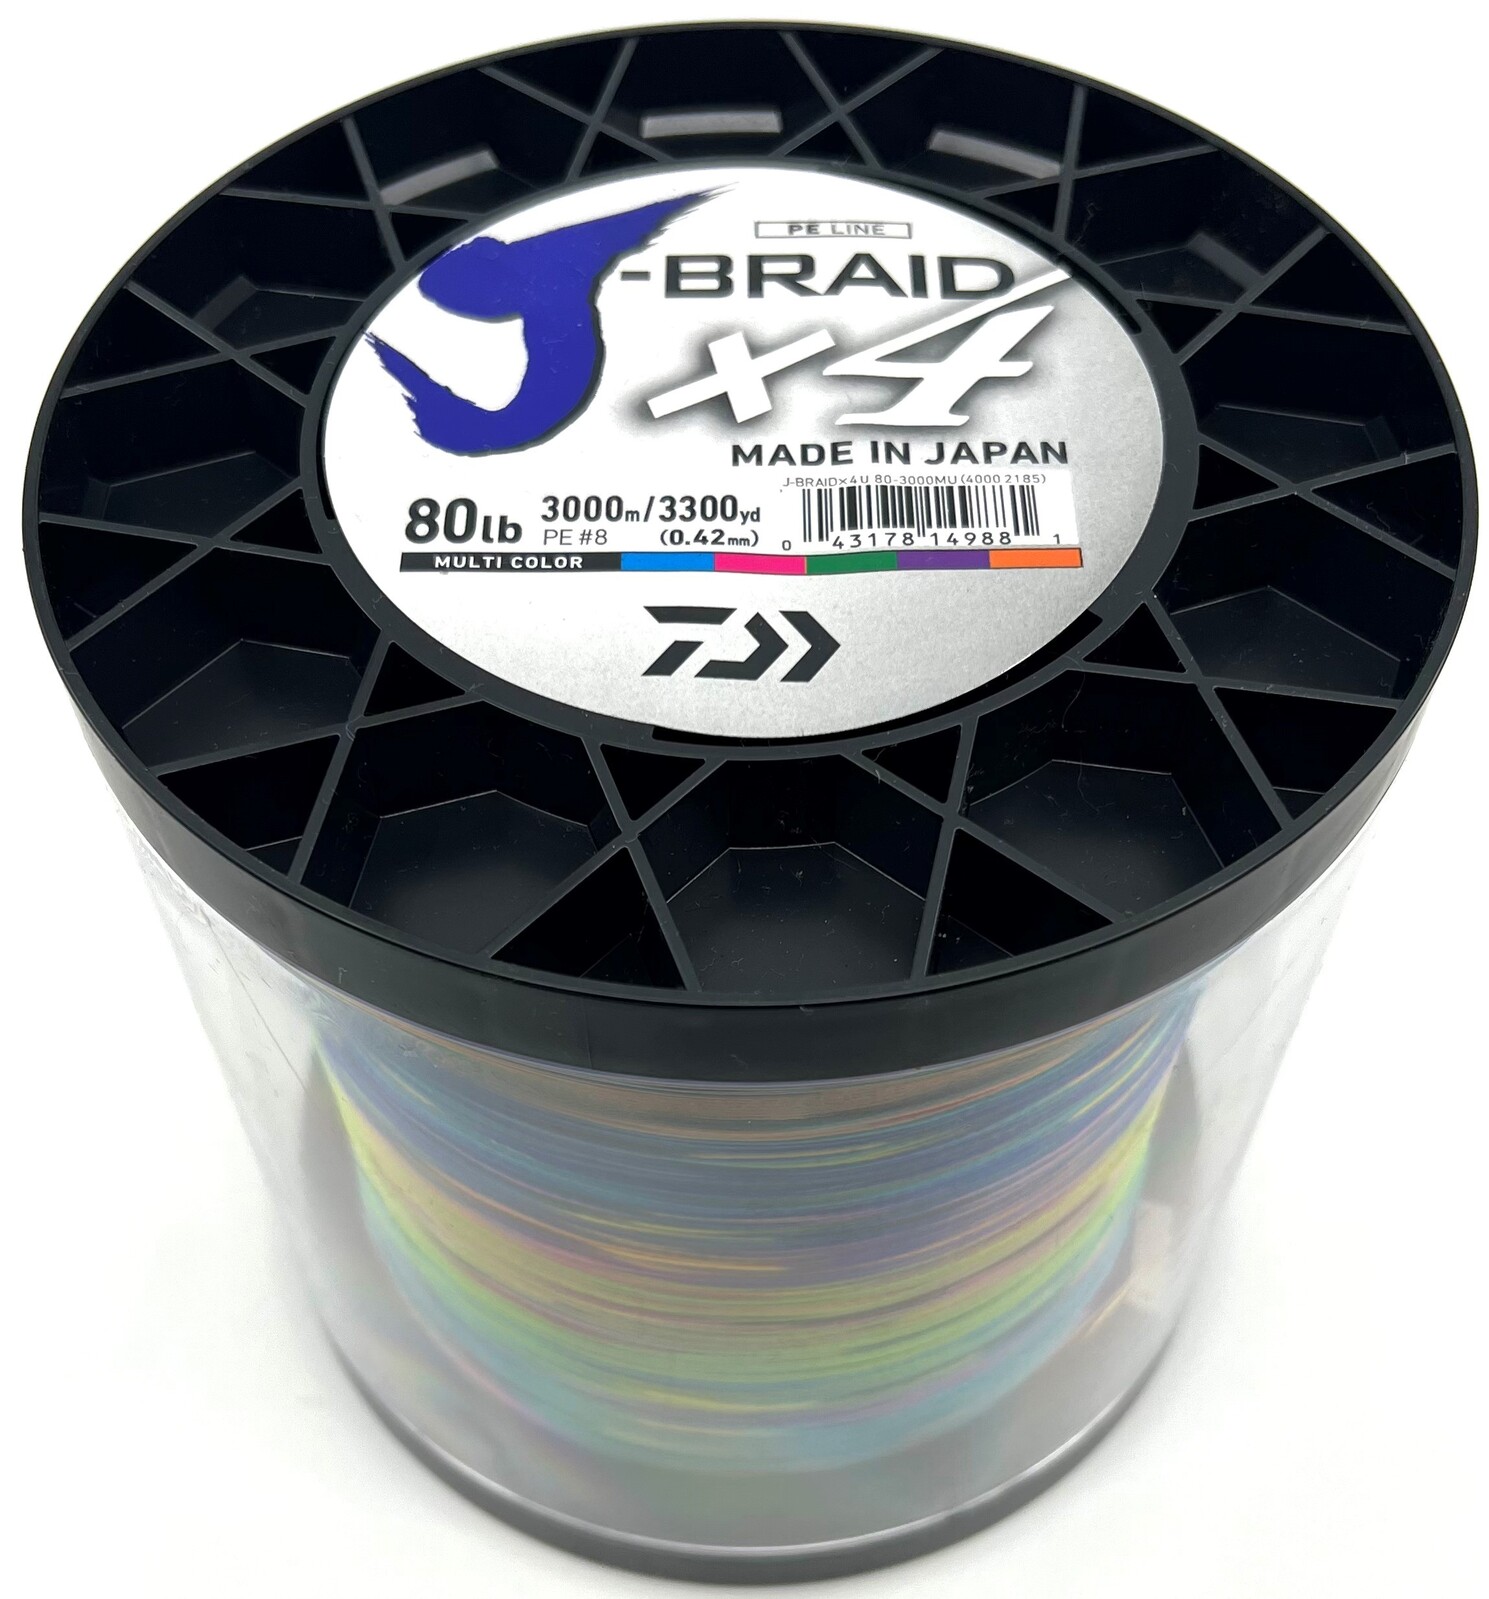 Daiwa J-Braid X4 1500m Multi Colour Bulk Braid Fishing Line